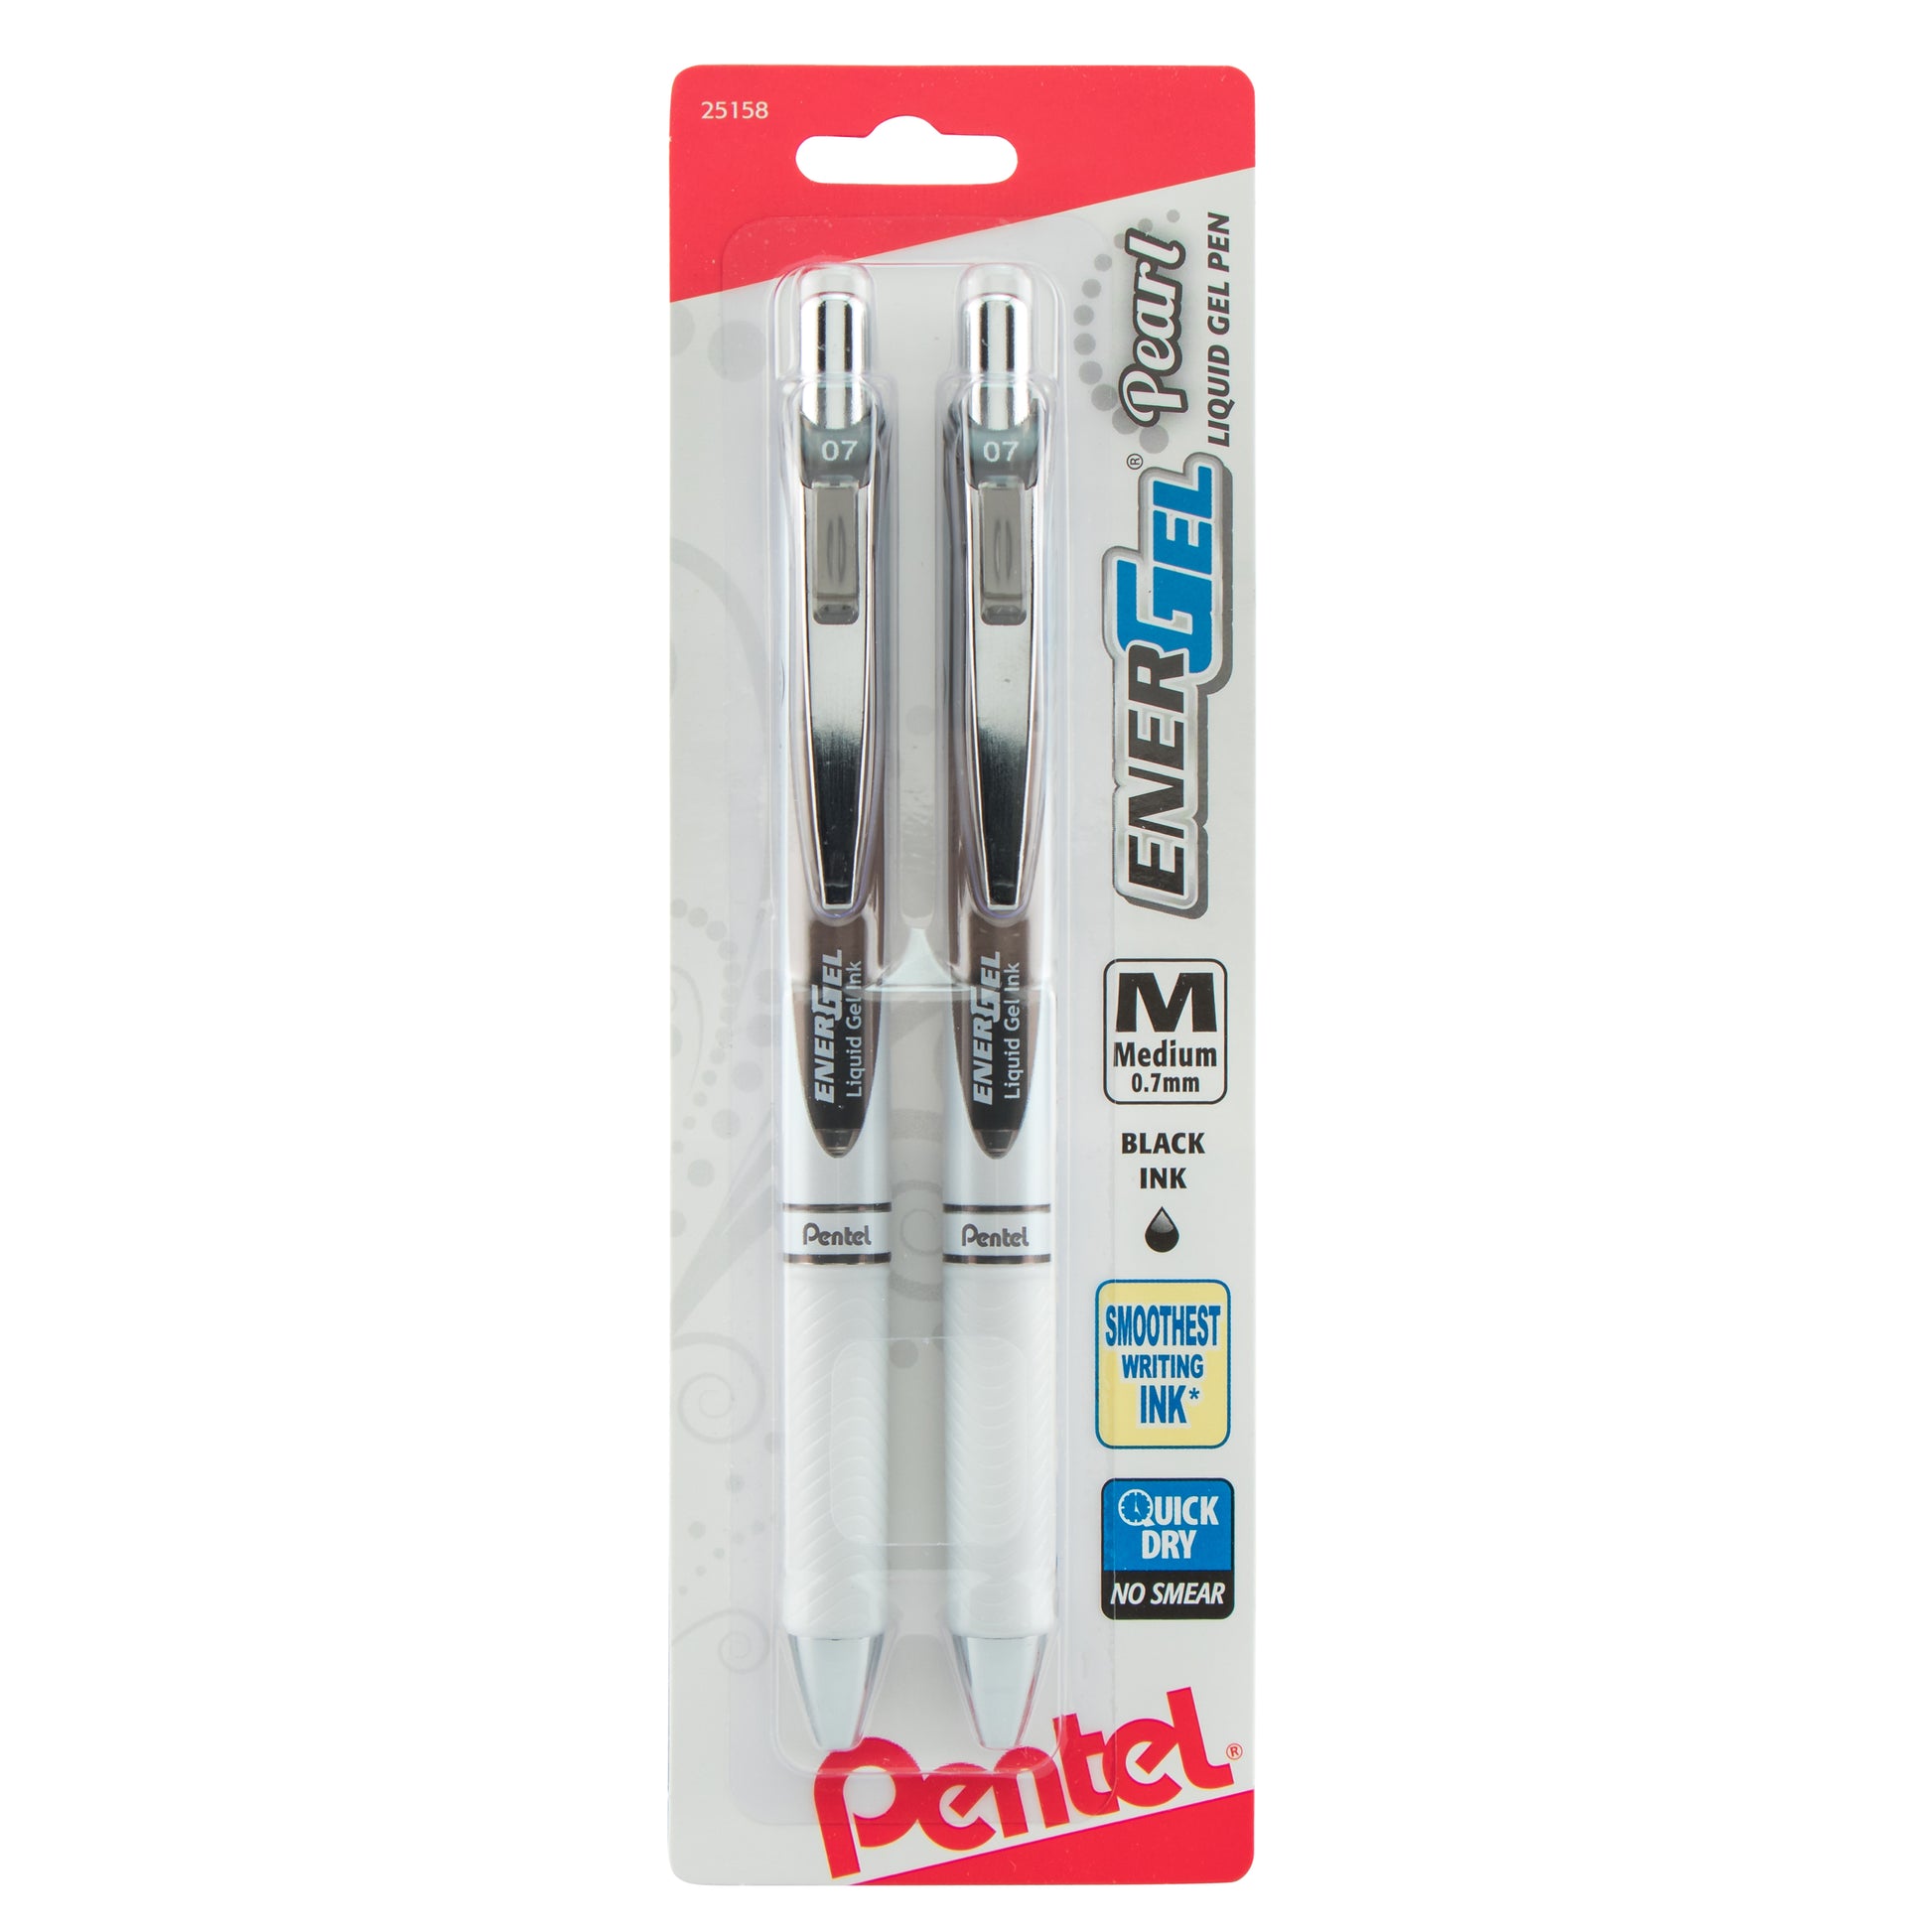 Pentel EnerGel 0.7 RTX Liquid Gel Ink Pens With Refills, Black Ink